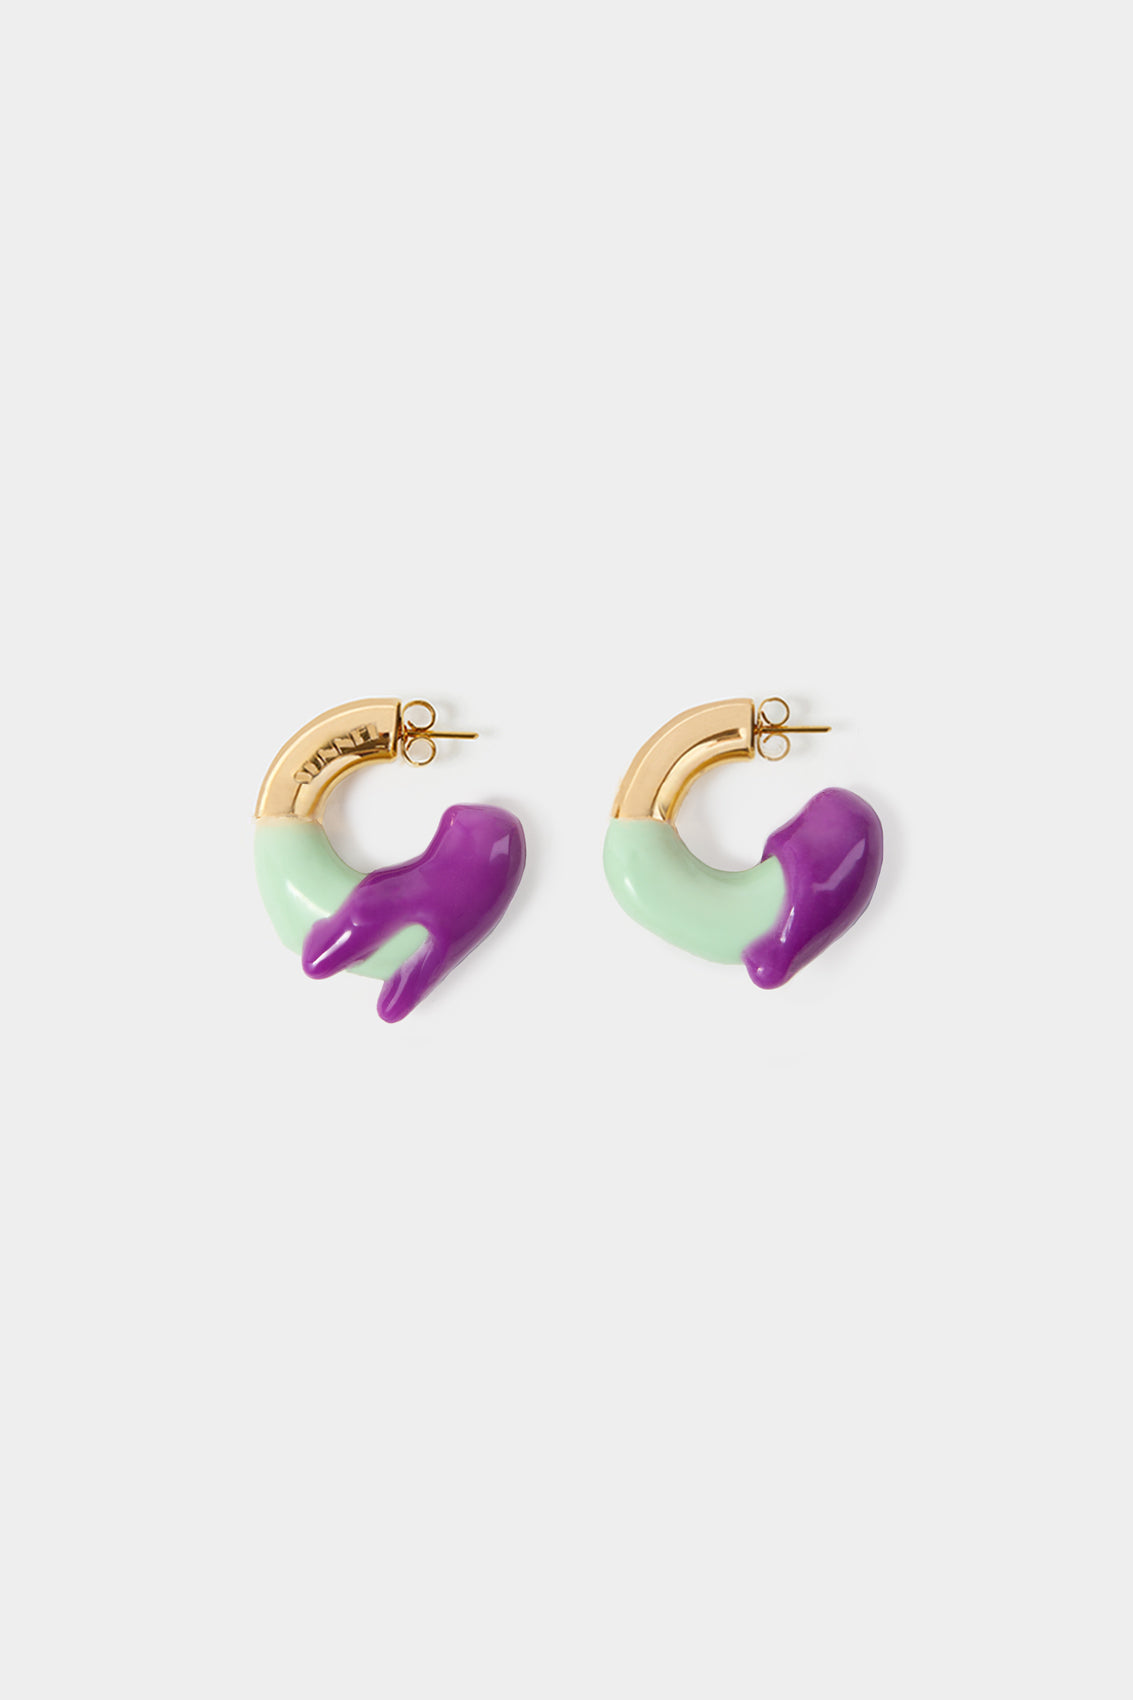 SMALL RUBBERIZED EARRINGS GOLD / purple & mint